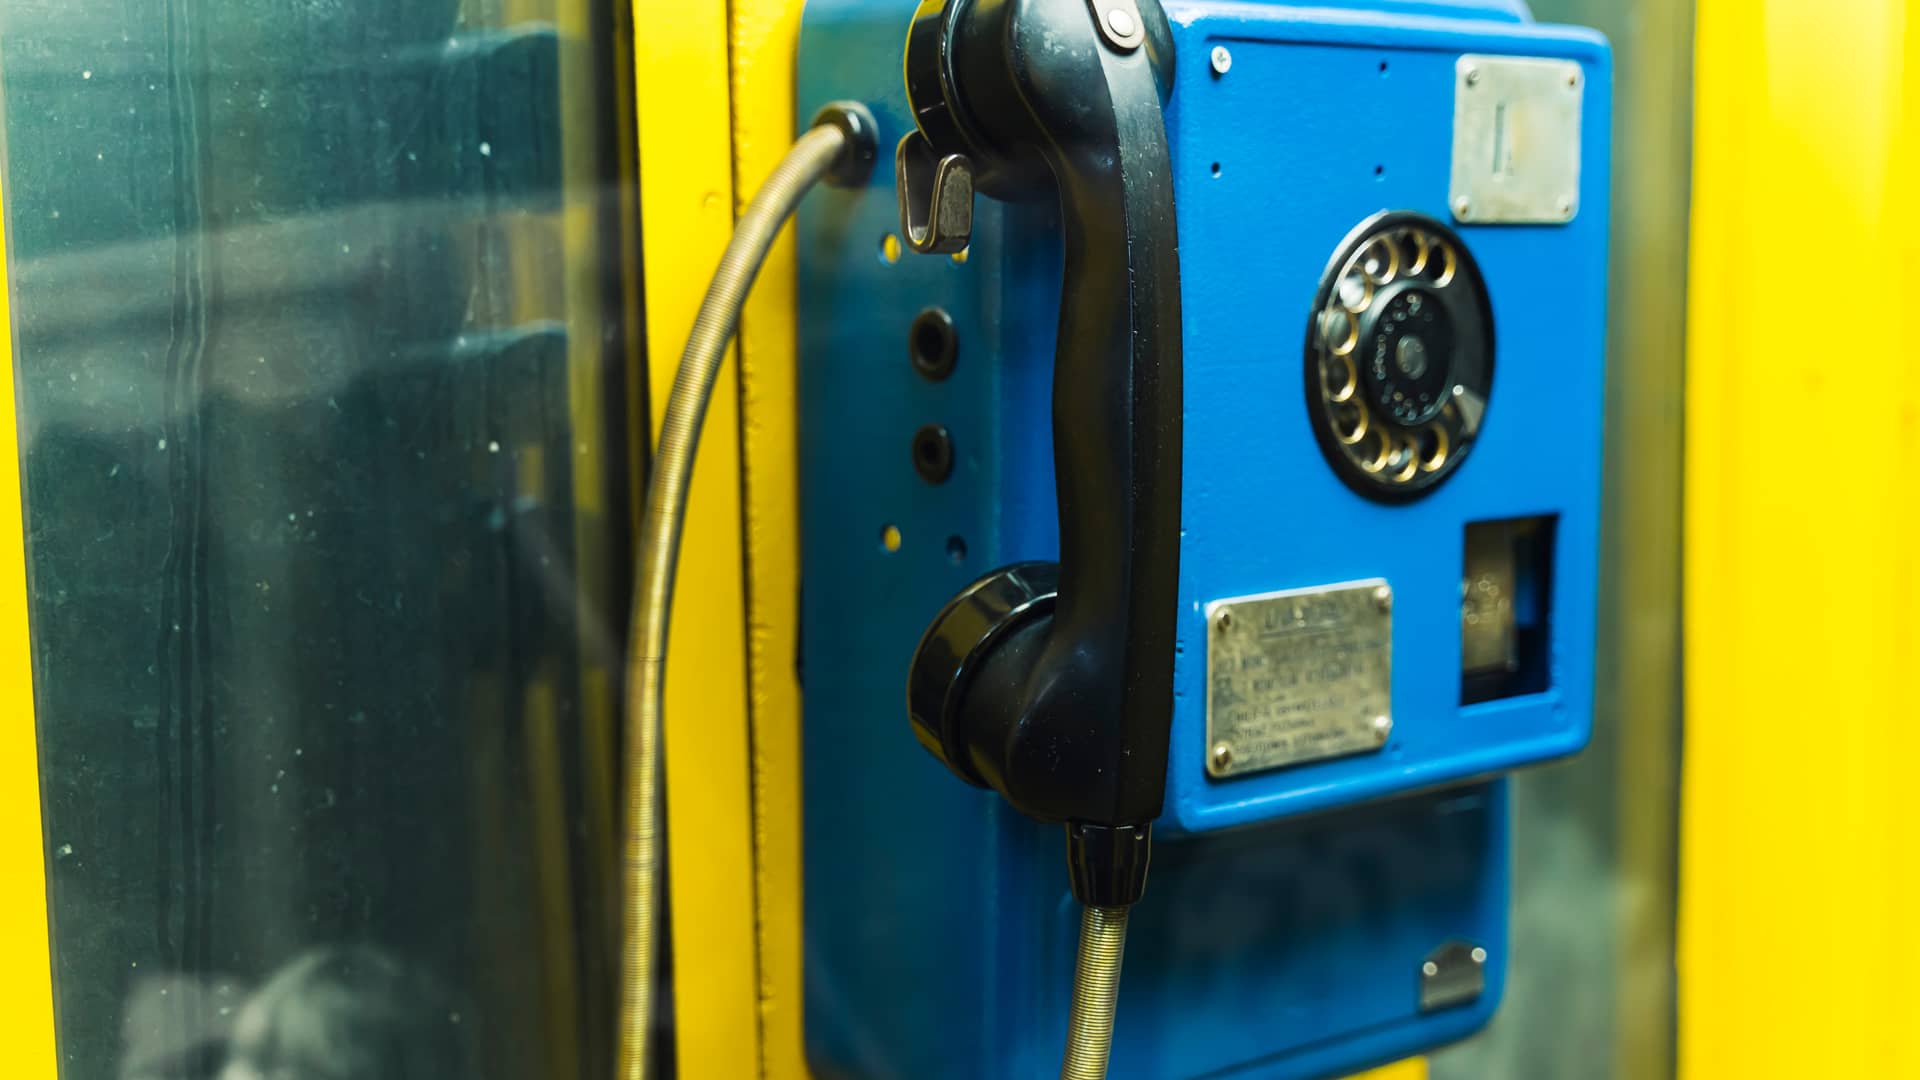 viejo telefono azul de una cabina que representa las tarifas descatalogadas de la empresa de telefonia o2